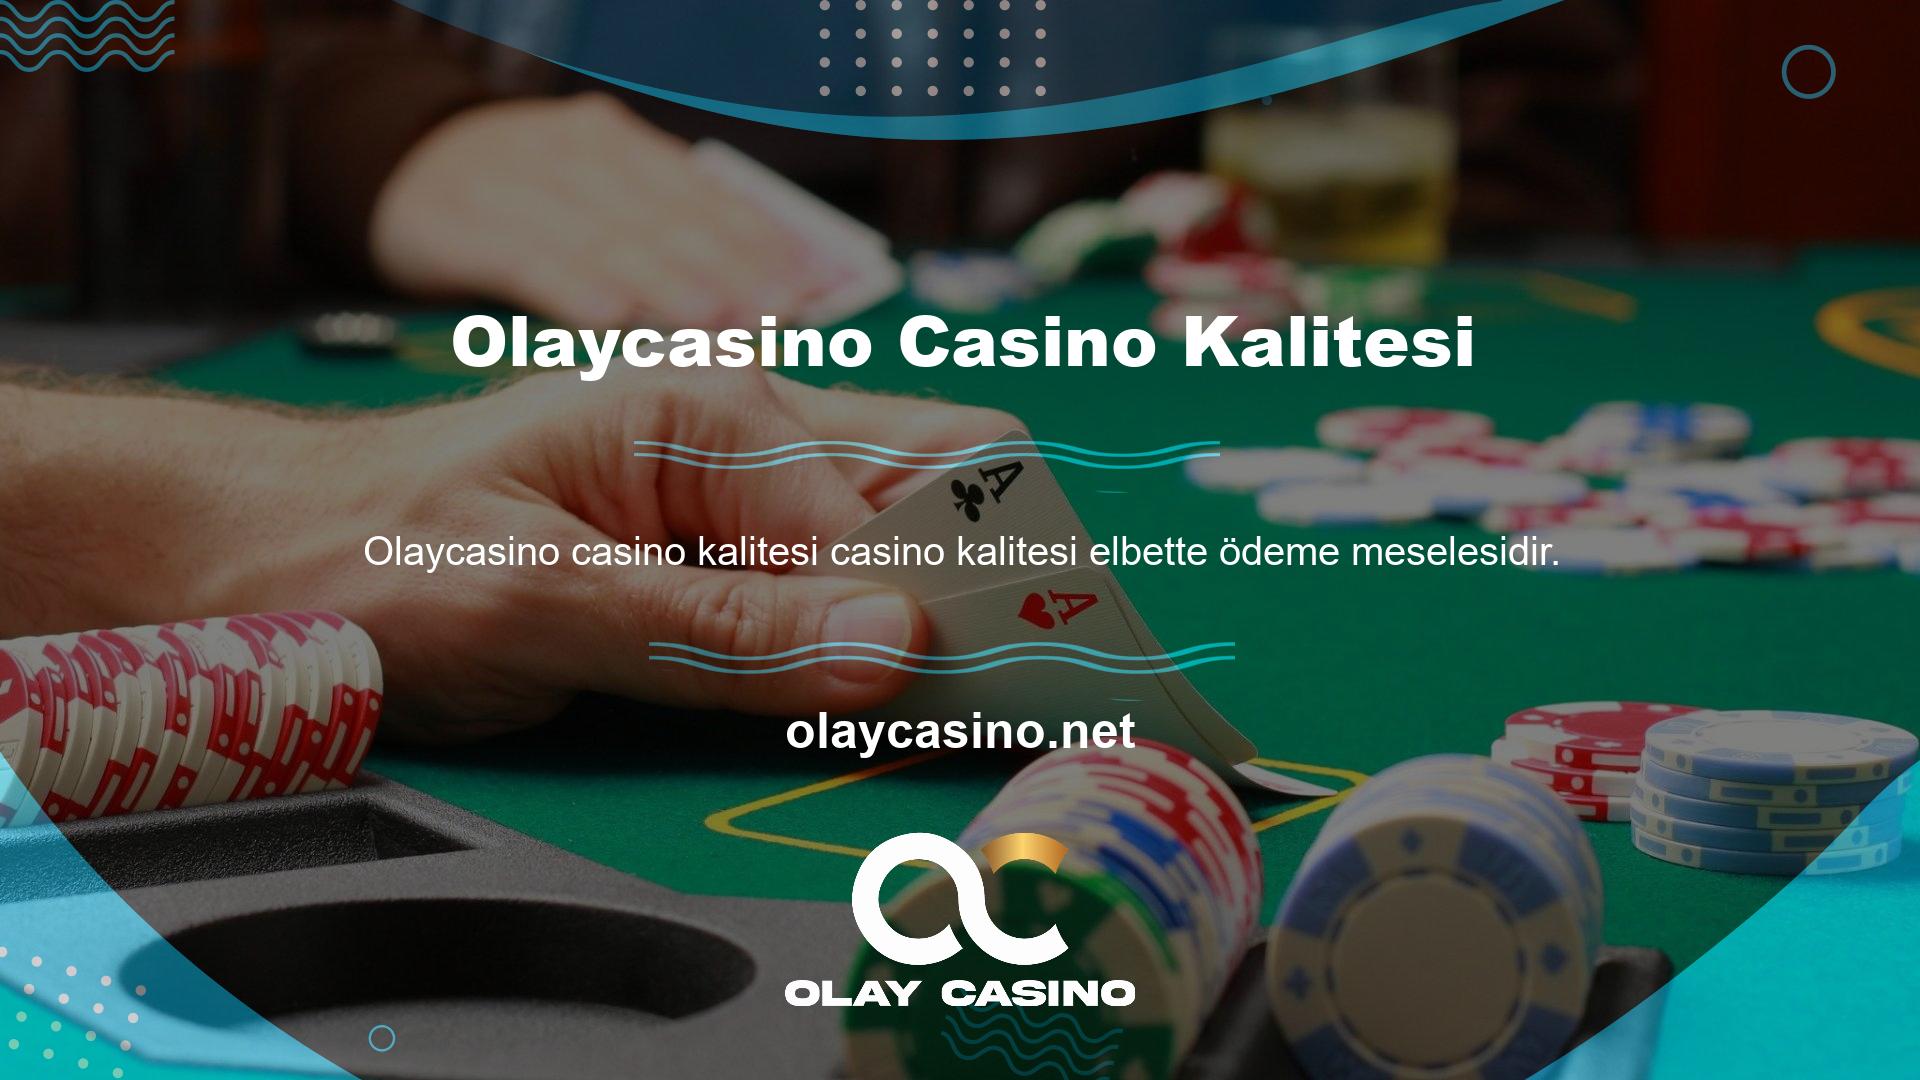 Ayrıca bu sitede gözlemlediğimiz şey casino oyunlarında kullanılan altyapı sağlayıcıların çok kaliteli isimler içermesidir